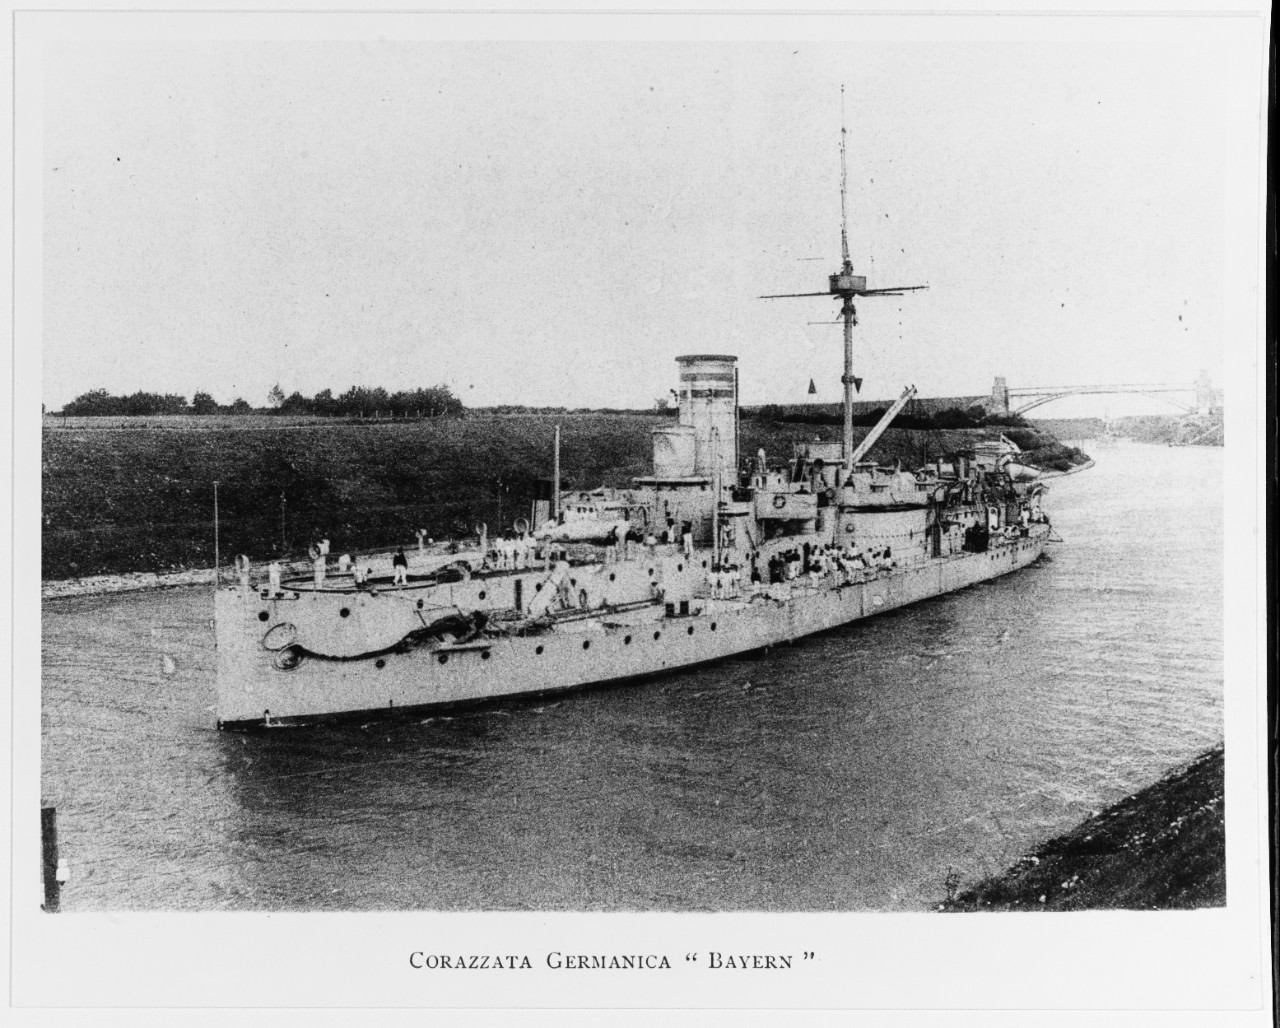 BAYERN (German Battleship, 1878-1910)